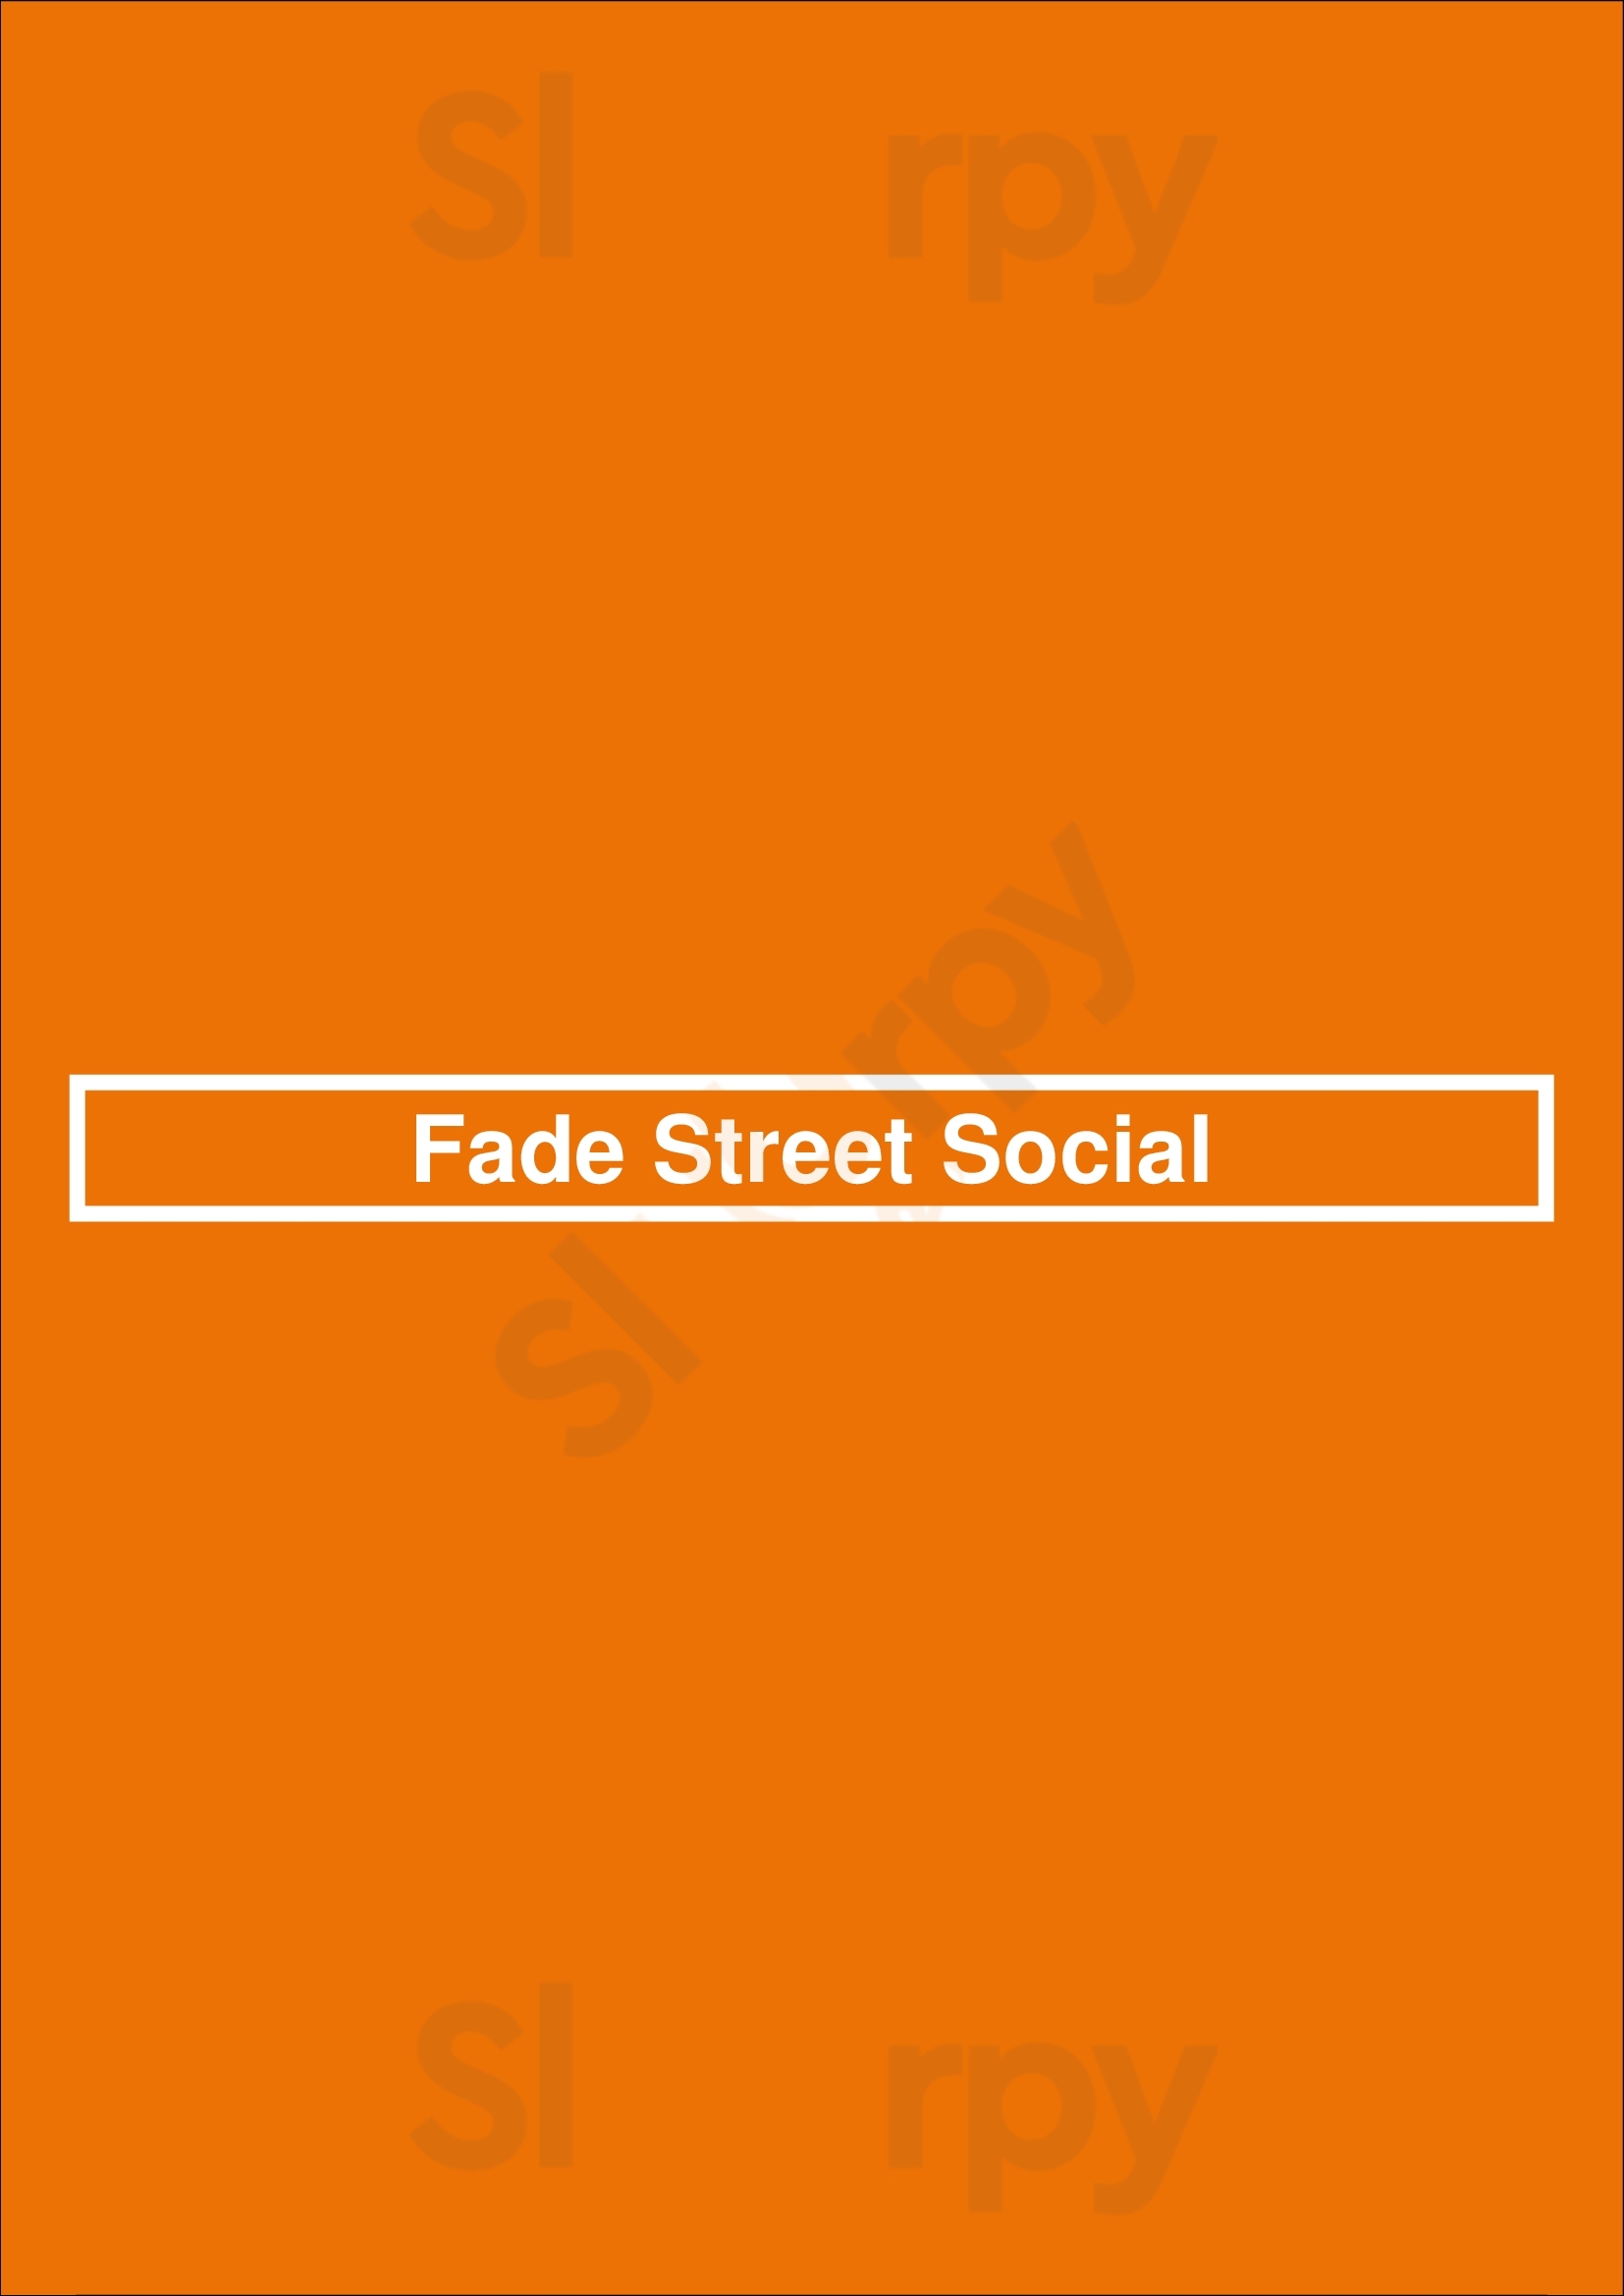 Fade Street Social Dublin Menu - 1